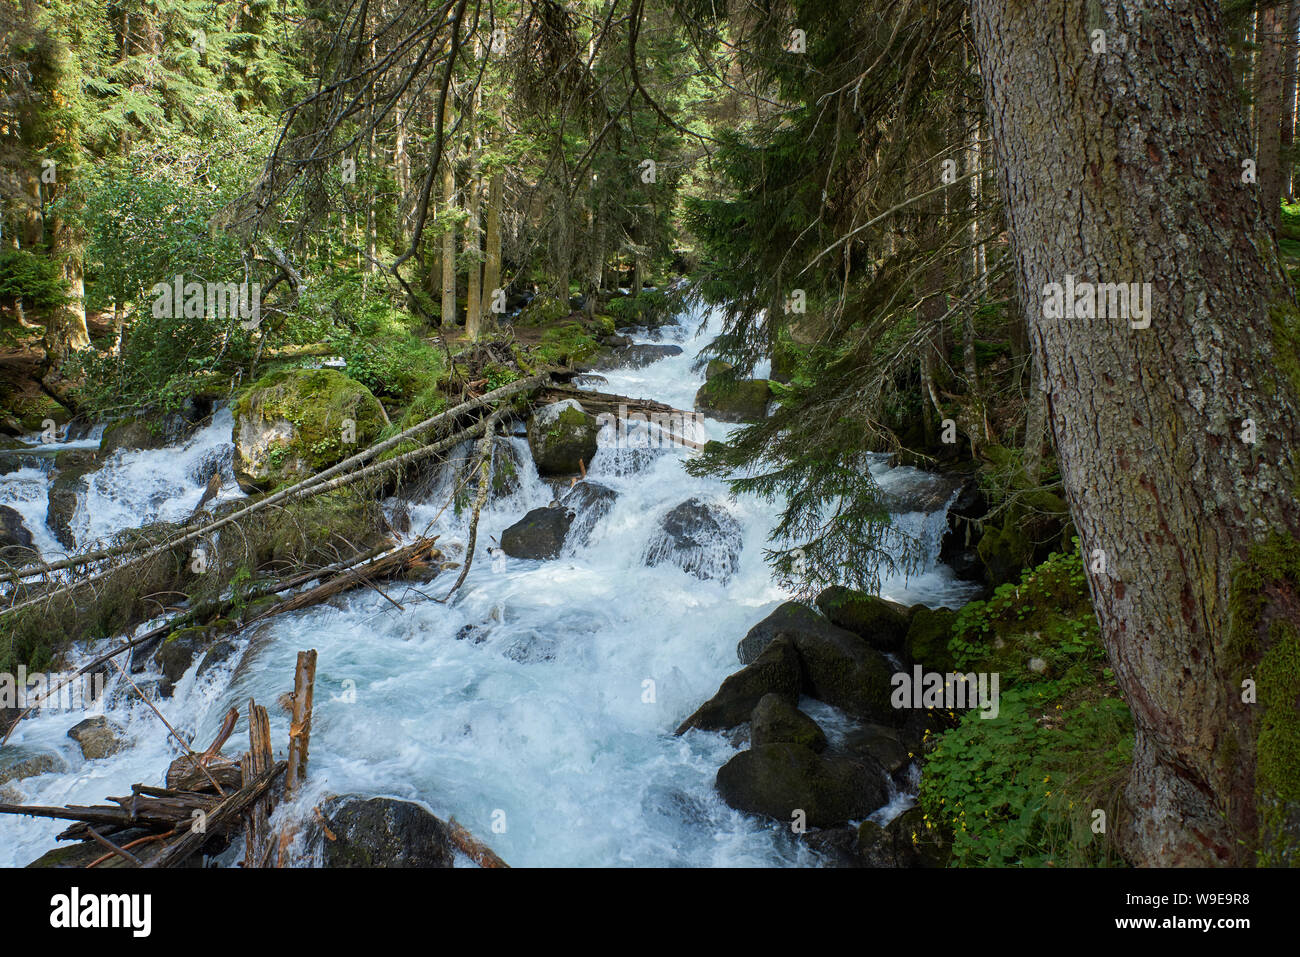 Une rivière avec de l'eau moussante swift dans une forêt de pins. Ullu-Murudzhu, Nord du Caucase, Russie Banque D'Images